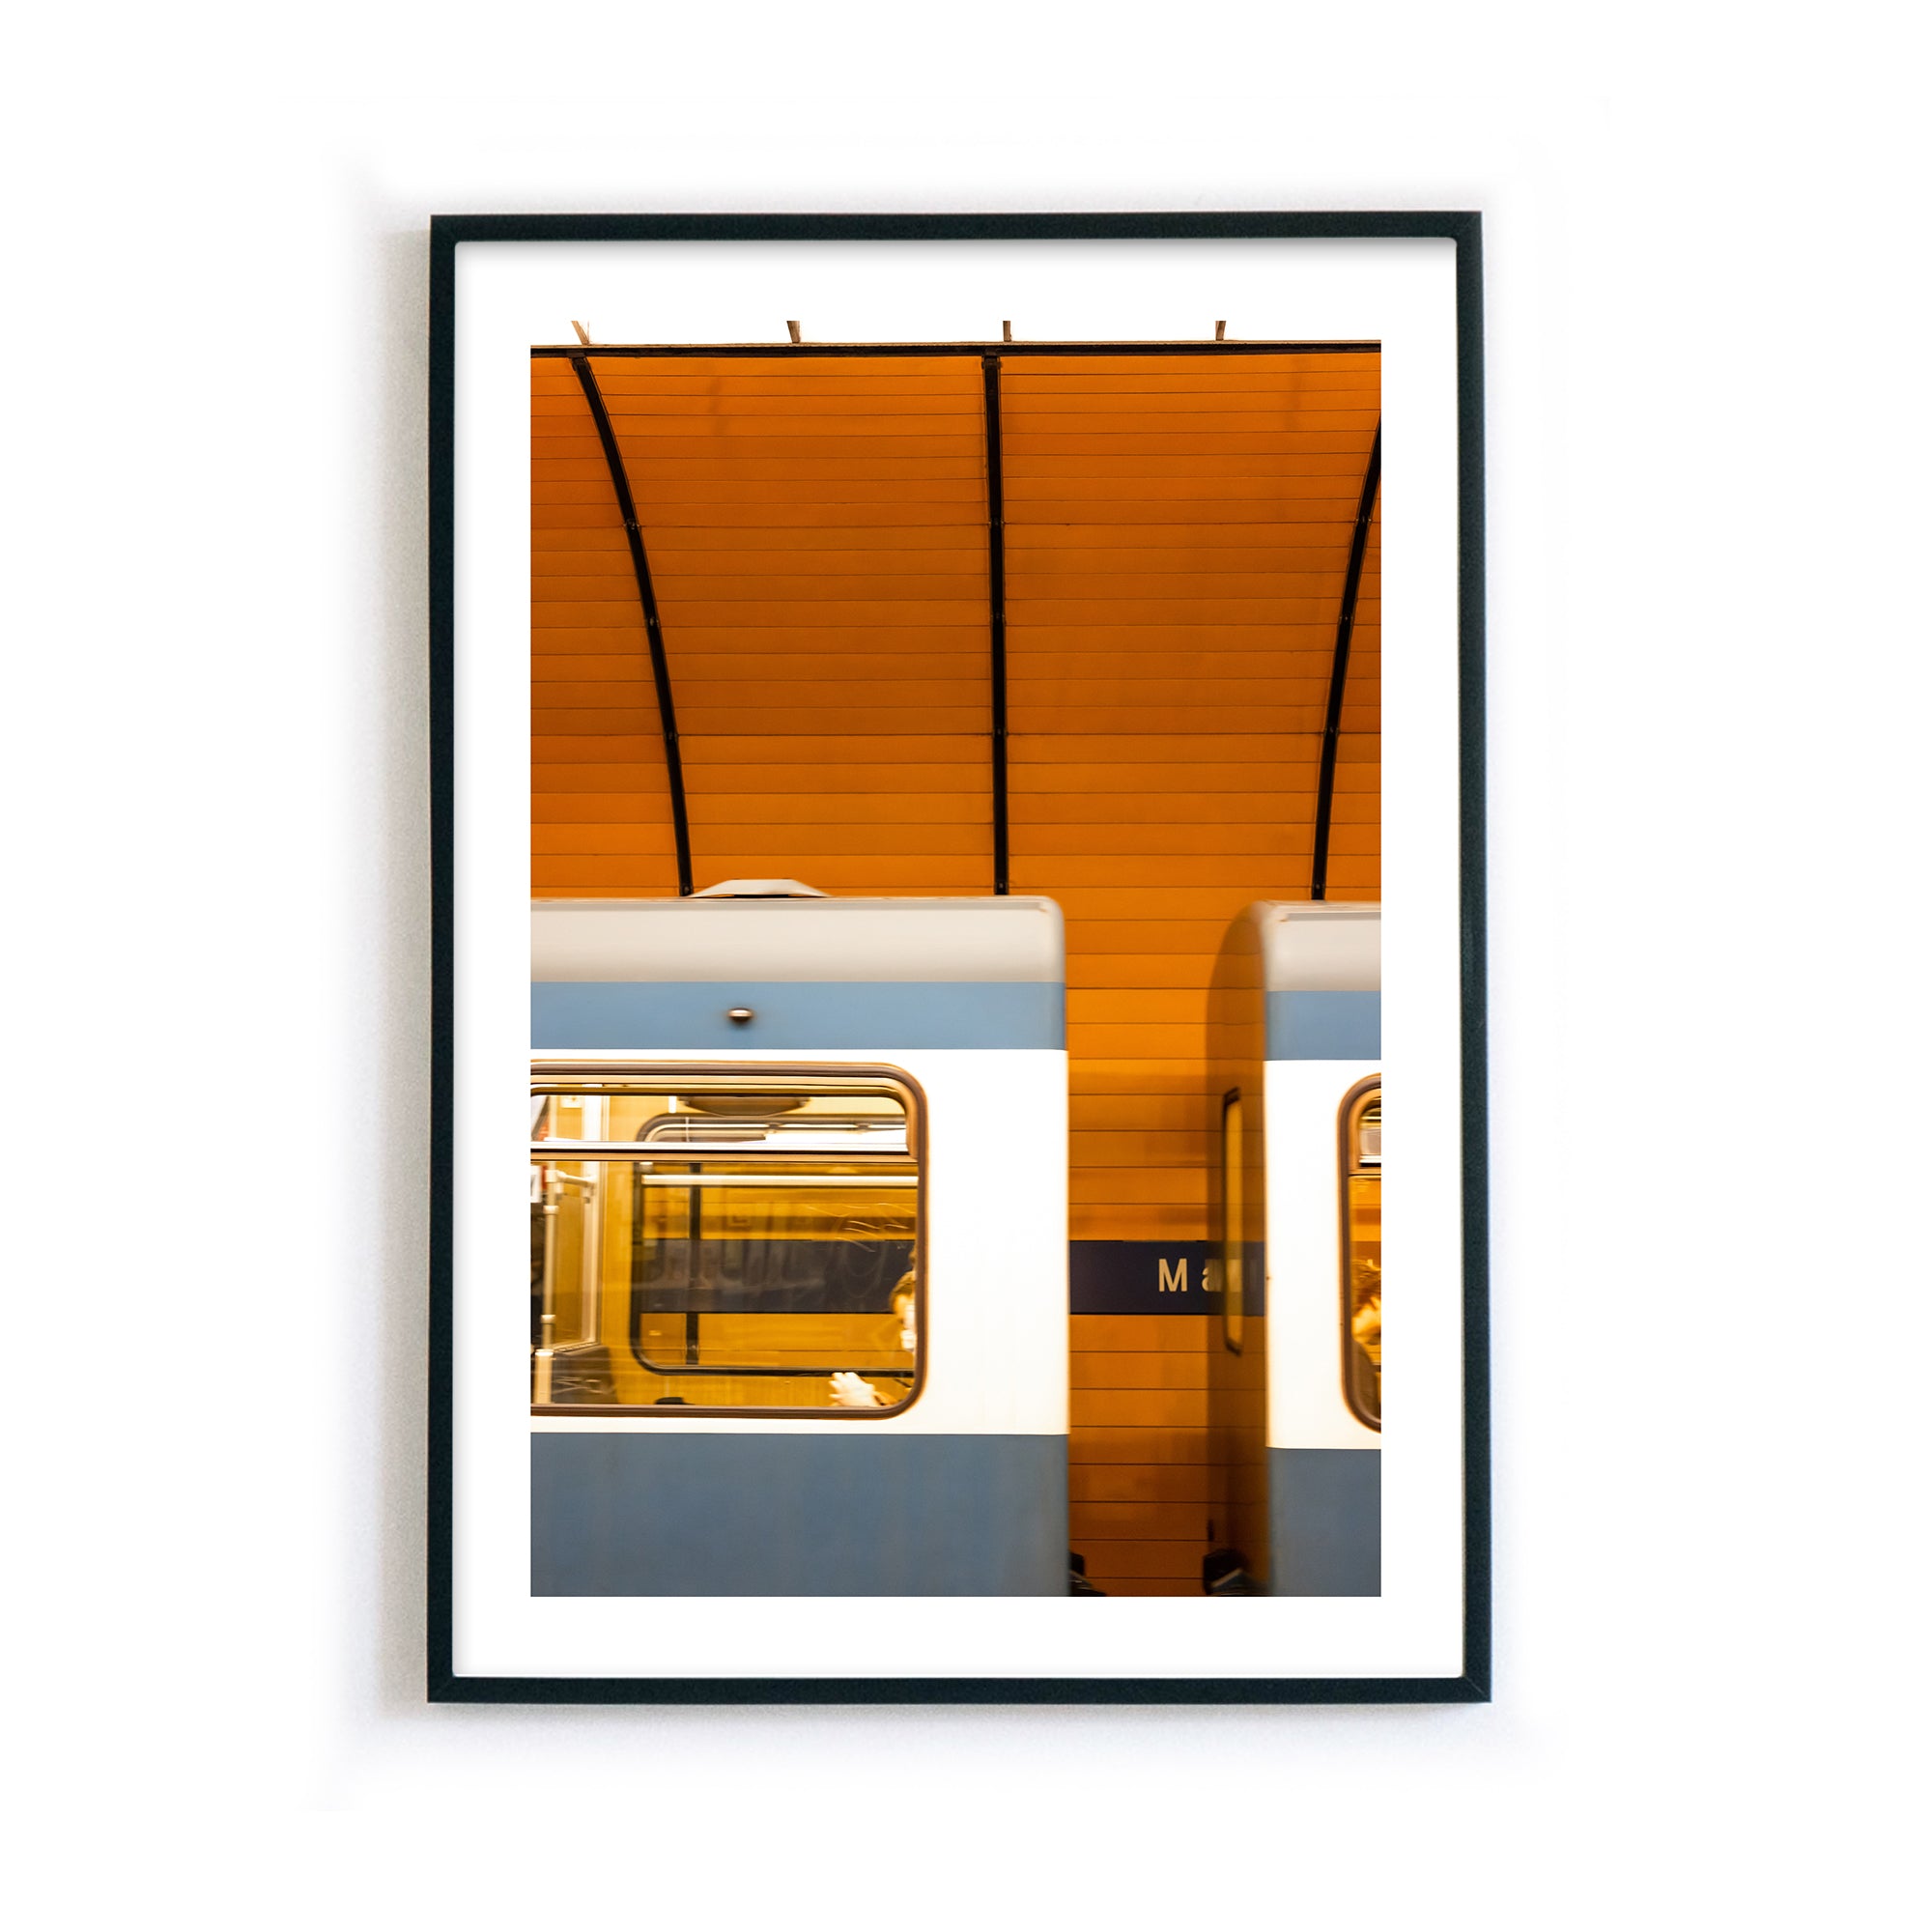 4one-pictures-muenchen-poster-a4-a3-a2-munich-bayern-geschenk-einzug-umzug-muenchen-orange-ubahn-retro-bilderrahmen.jpg